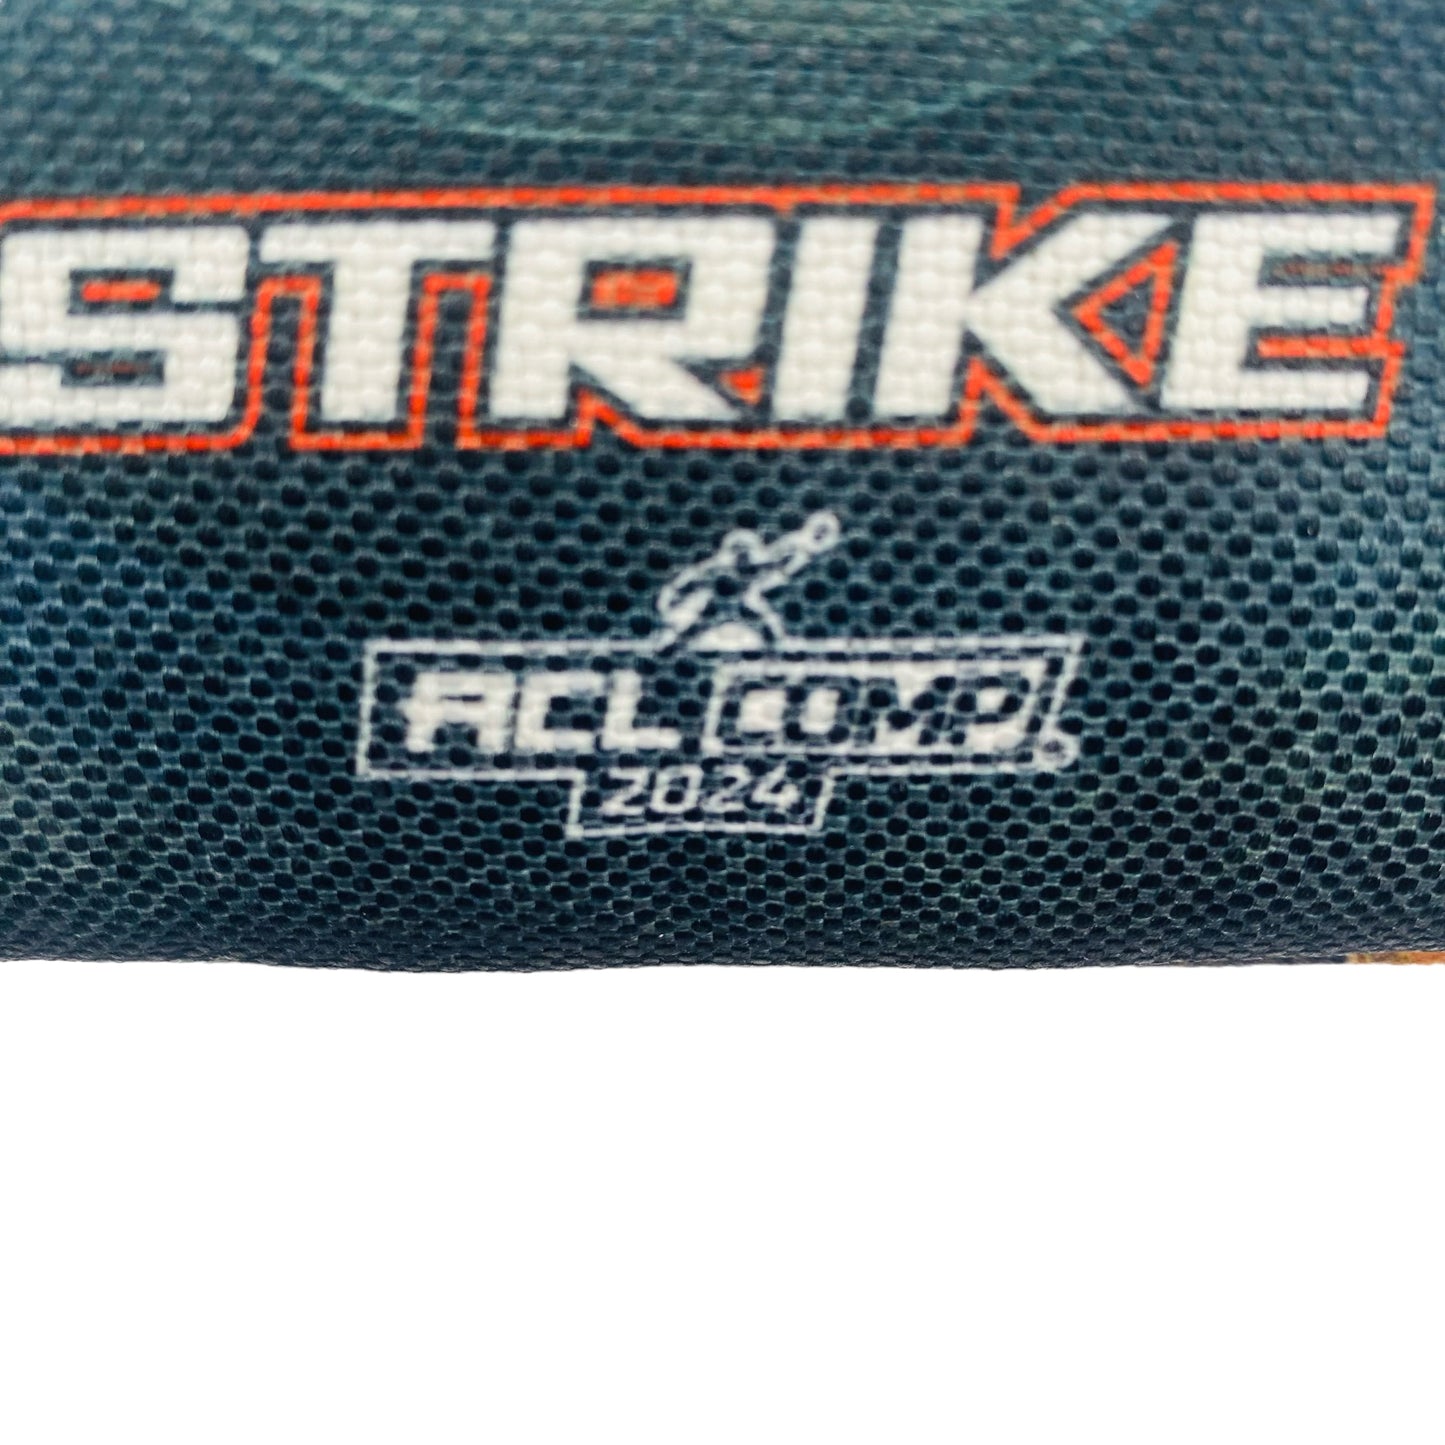 Strike | N1 Cornhole Gear | Cornhole Bags | Set of 4 | Speed: 5/8